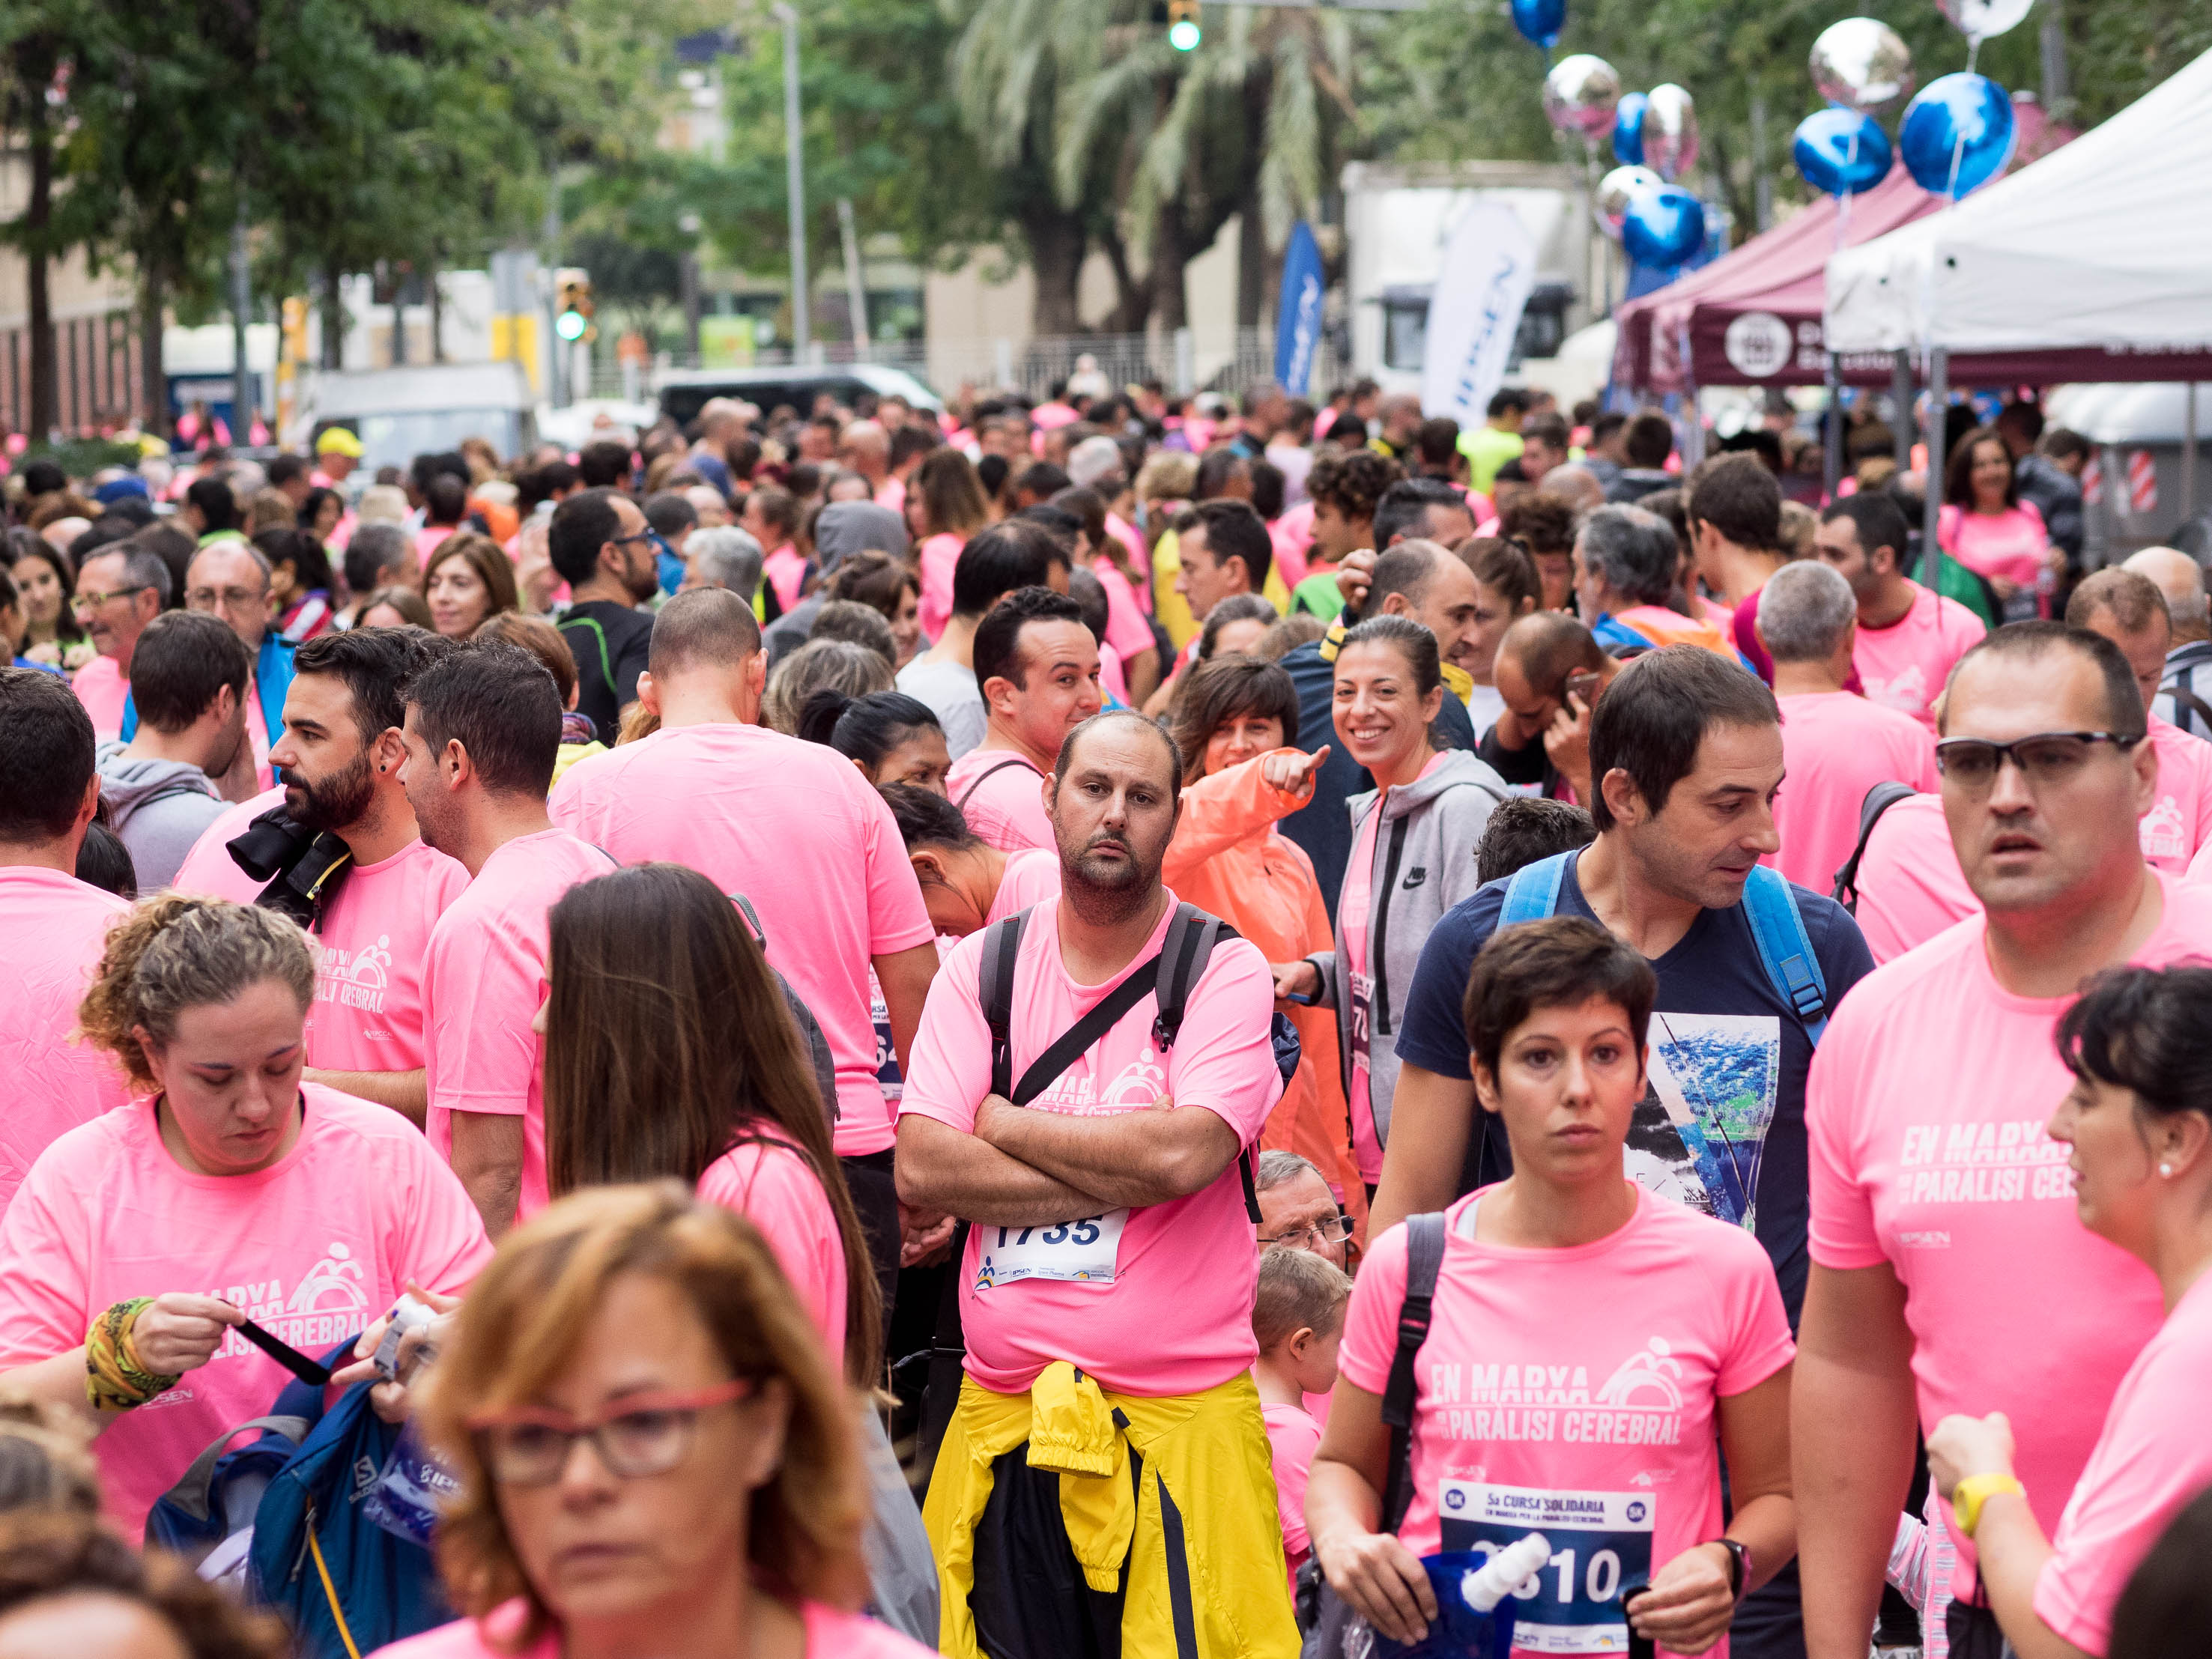 Més de dues mil persones es mouen per la paràlisi cerebral a Barcelona